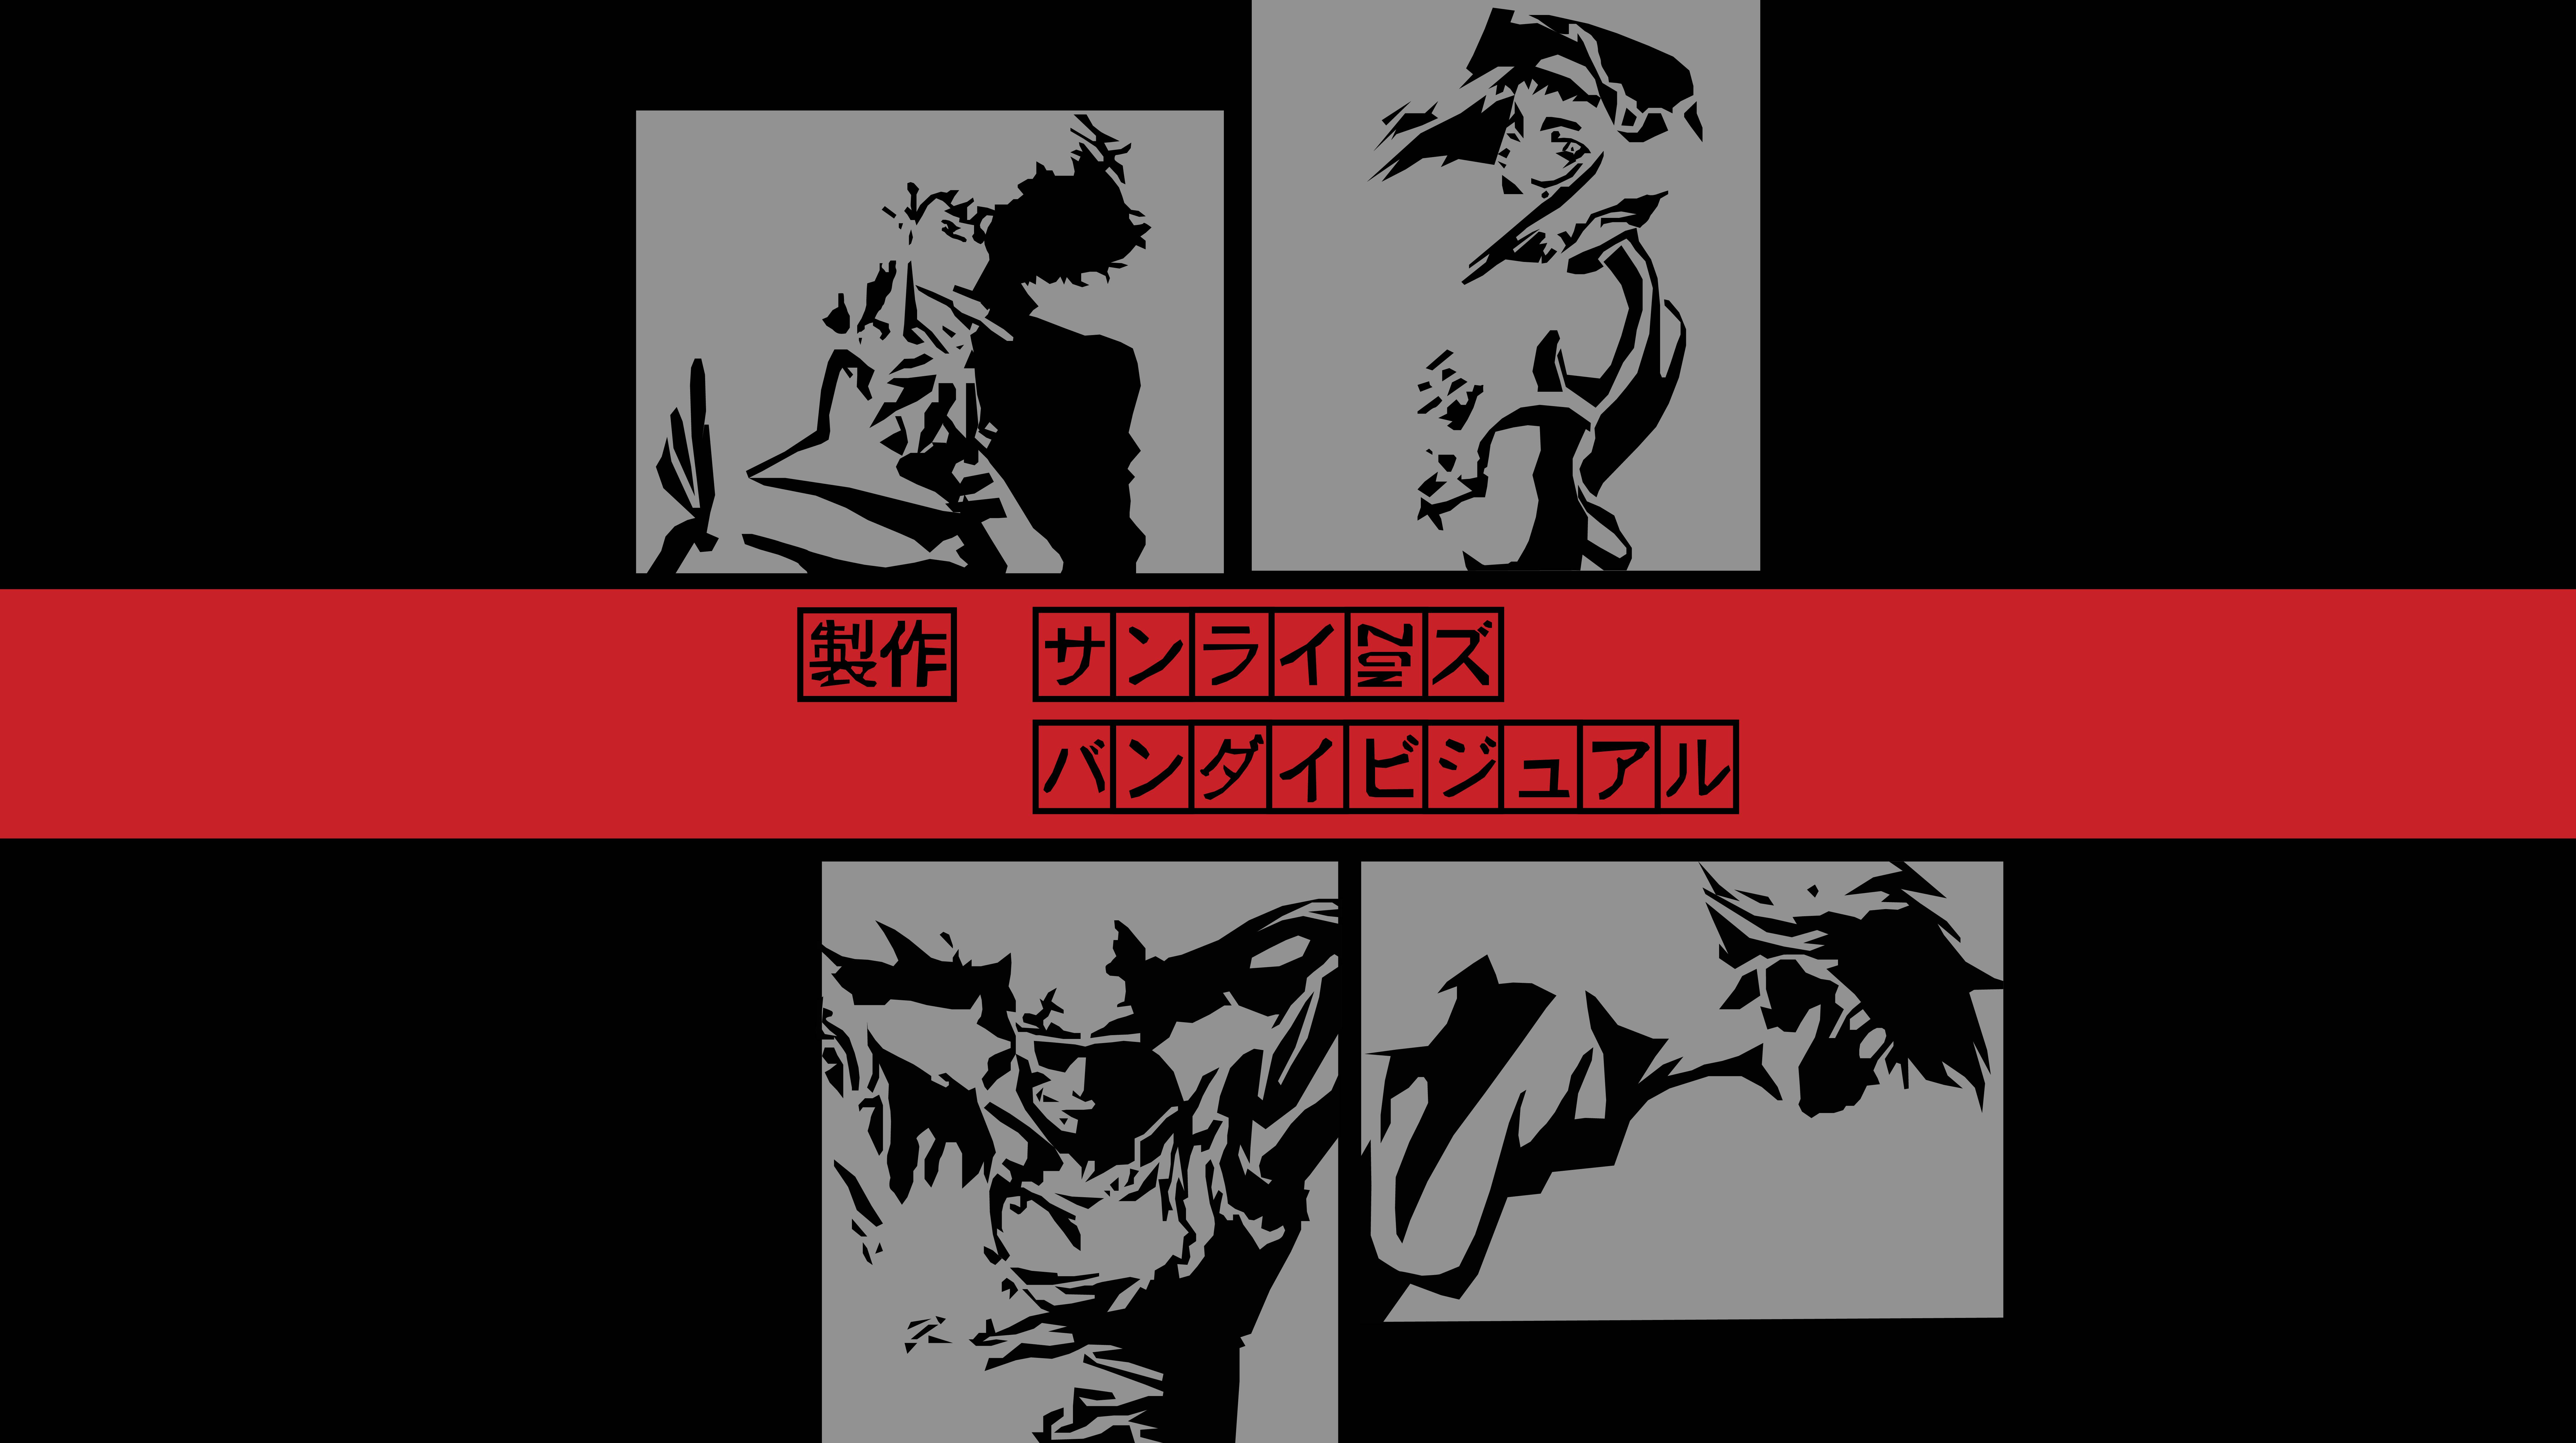 4K Anime Cowboy Bebop Wallpaper and Background Image